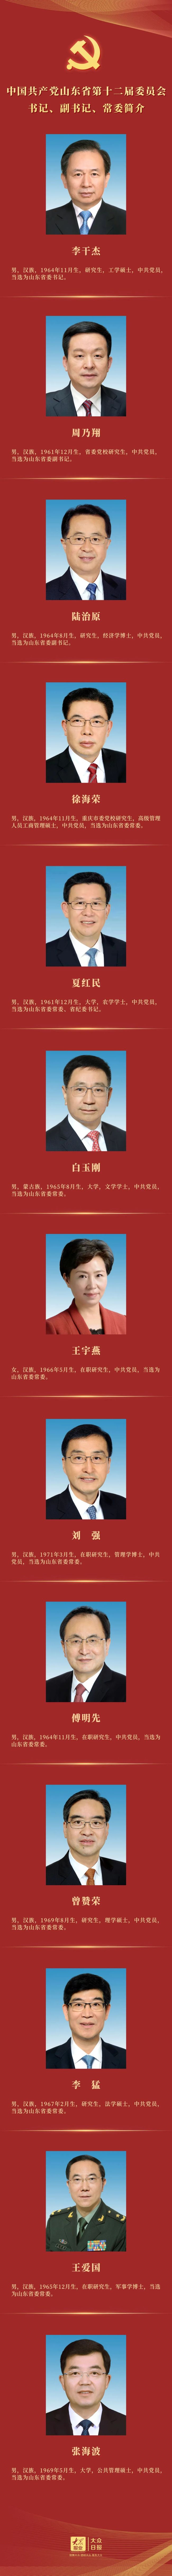 中国共产党山东省第十二届委员会书记、副书记、常委简介